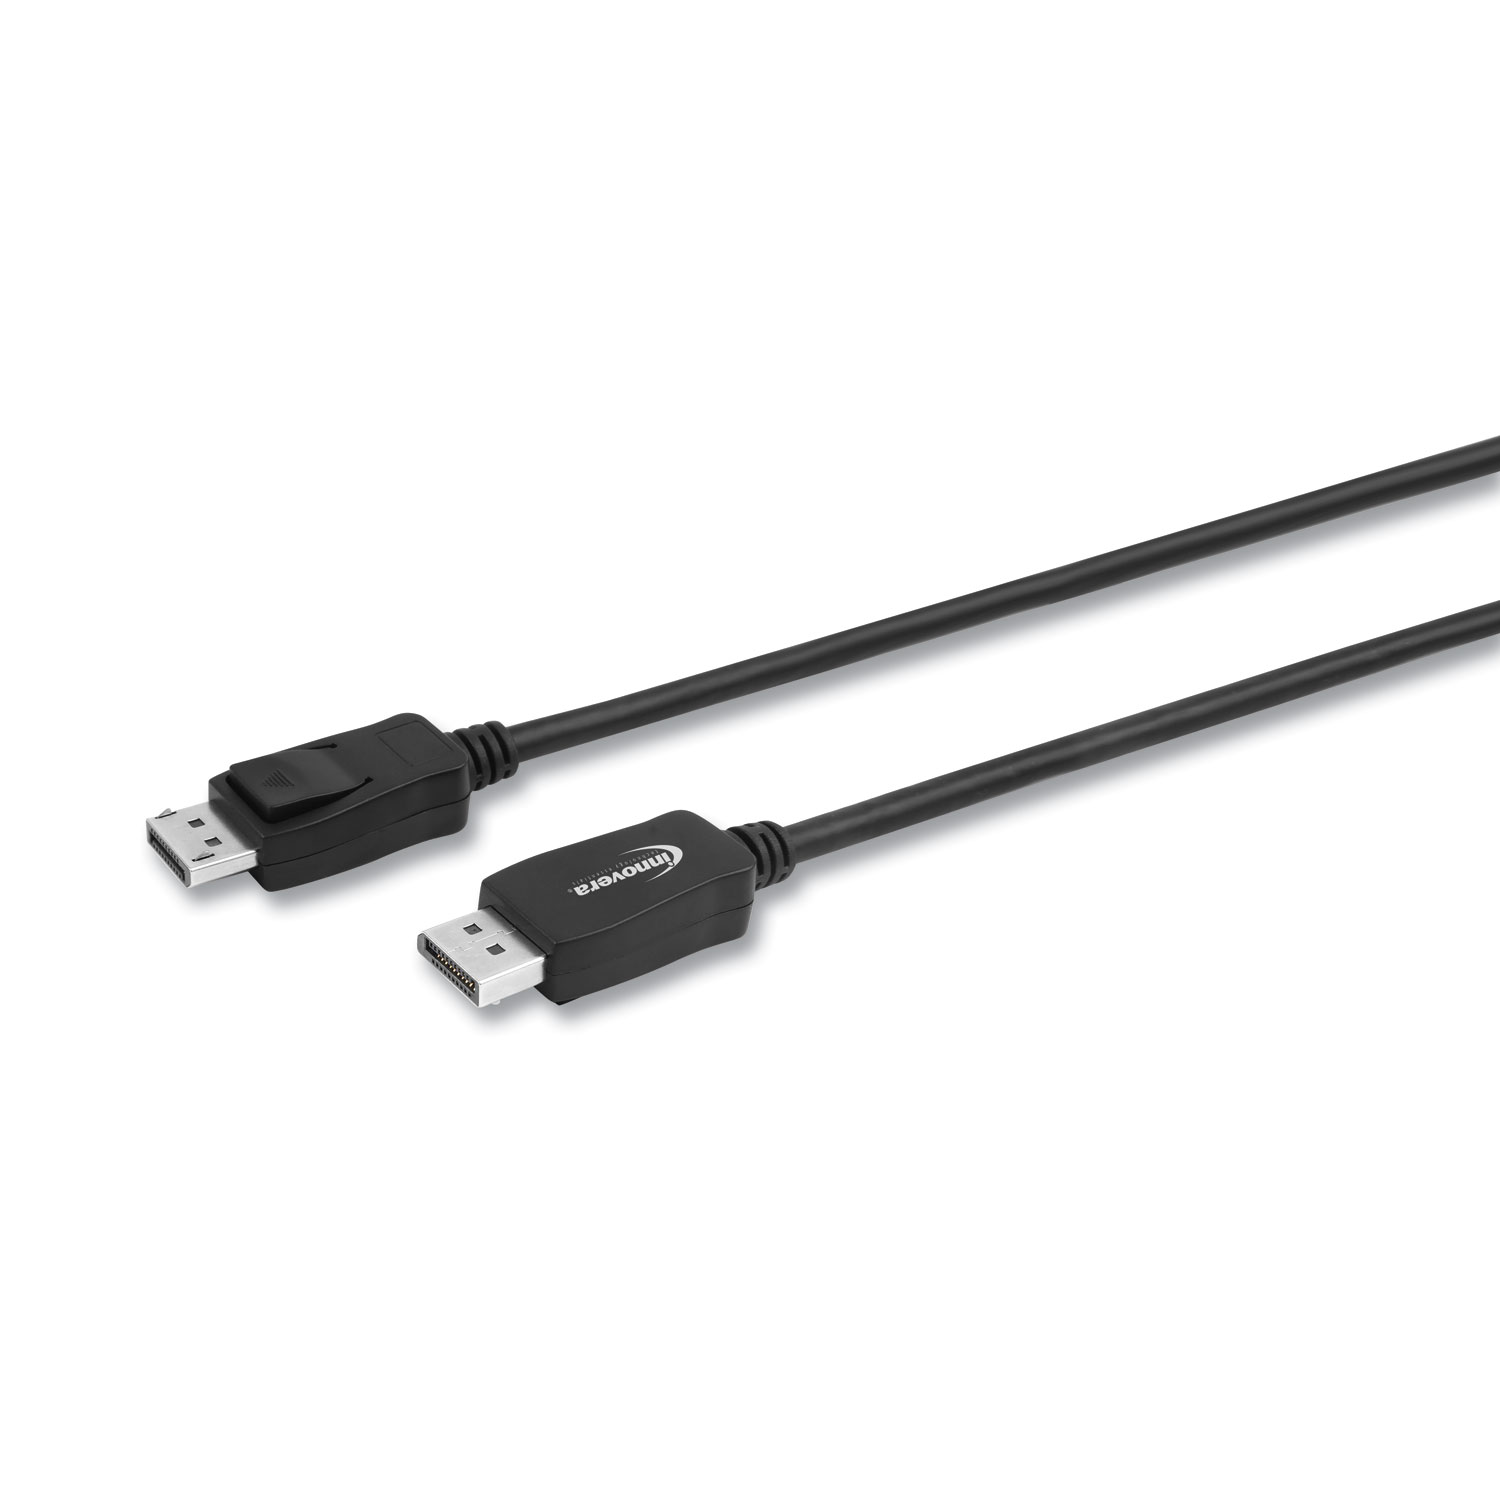  Innovera IVR30030 DisplayPort Cable, 6 ft, Black (IVR30030) 